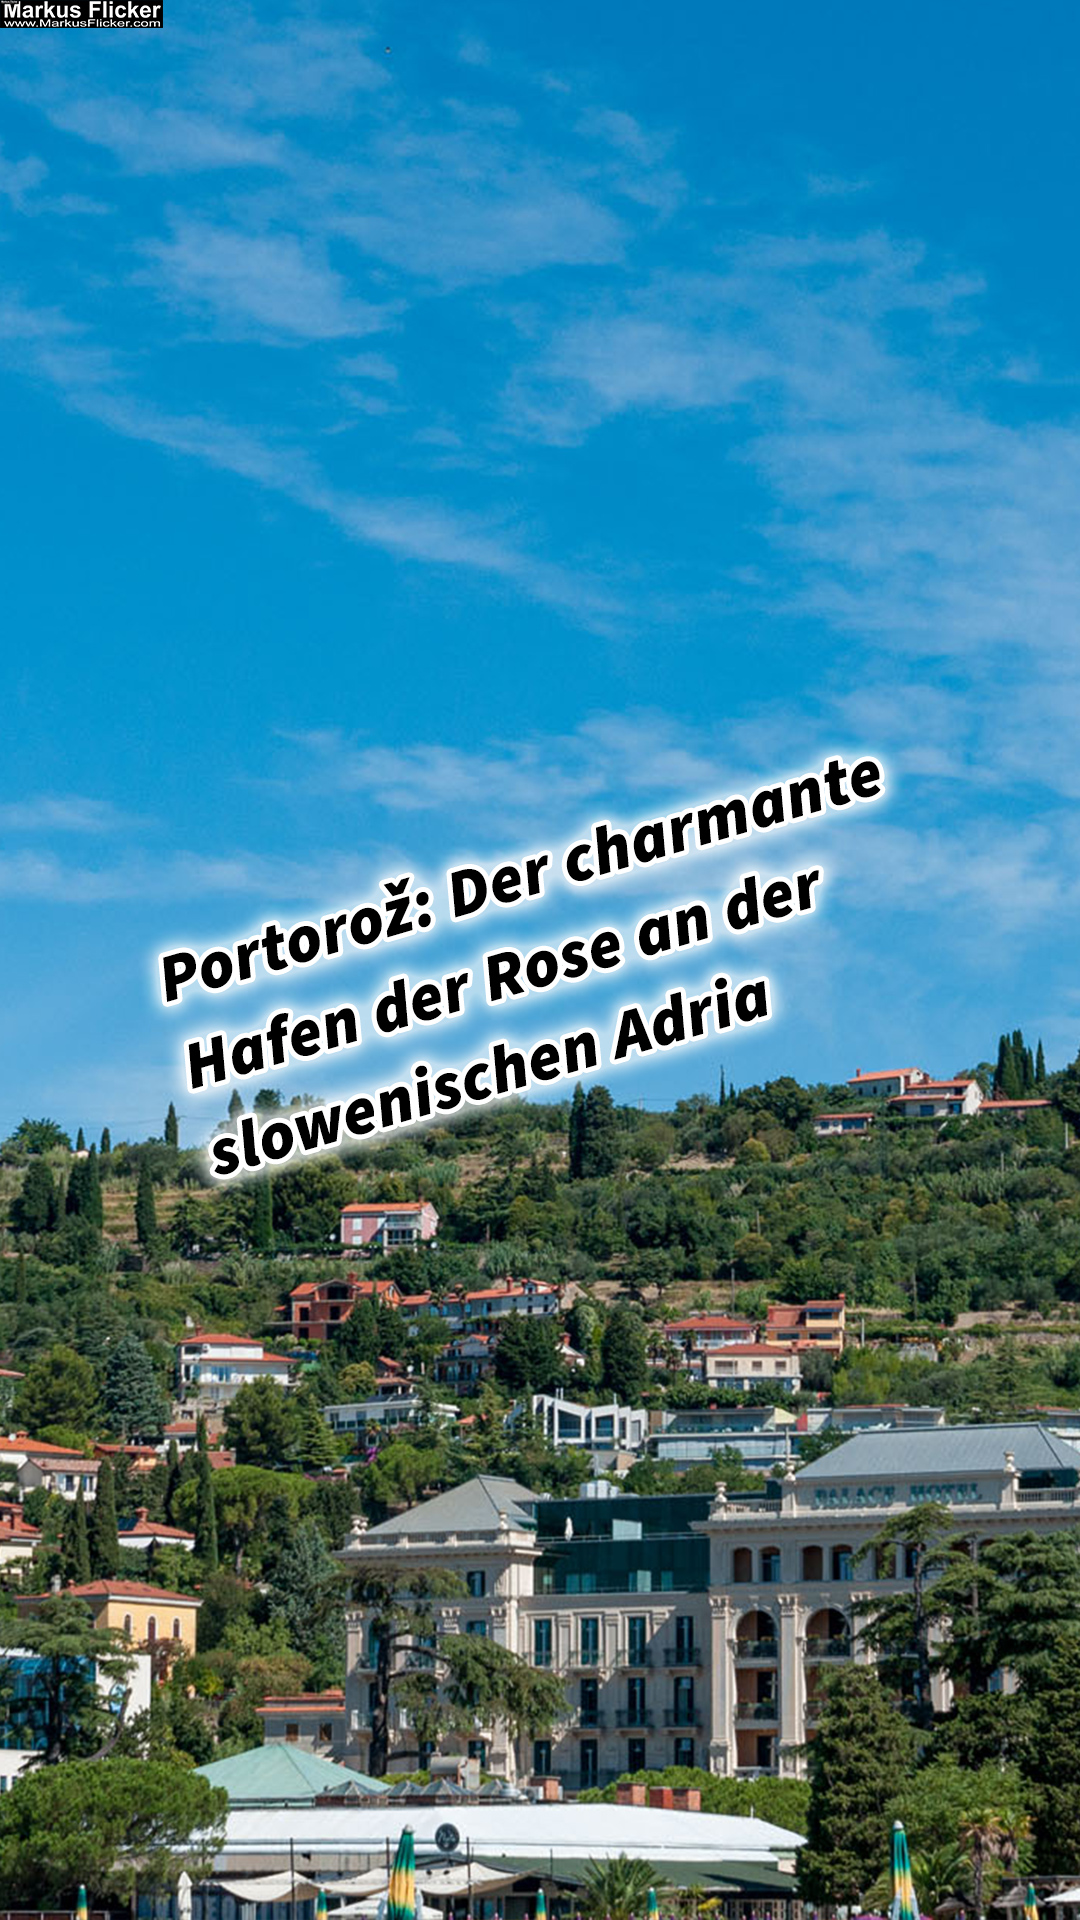 Portorož Slowenien Der charmante Hafen der Rose an der slowenischen Adria